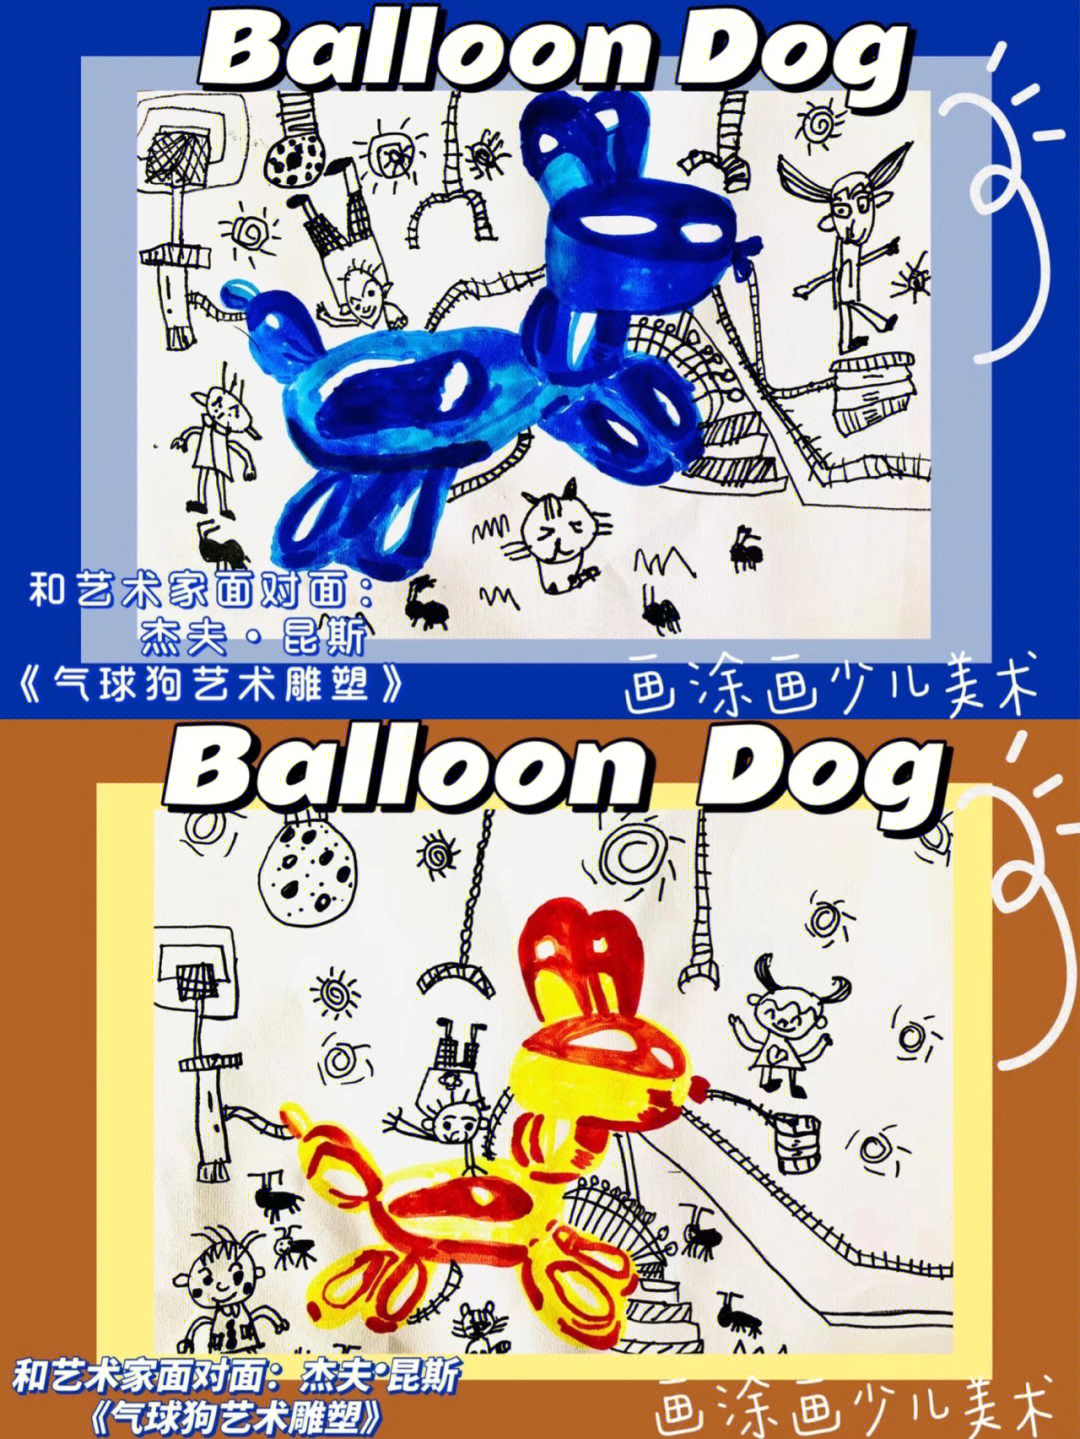 儿童创意美术67岁龄段气球狗